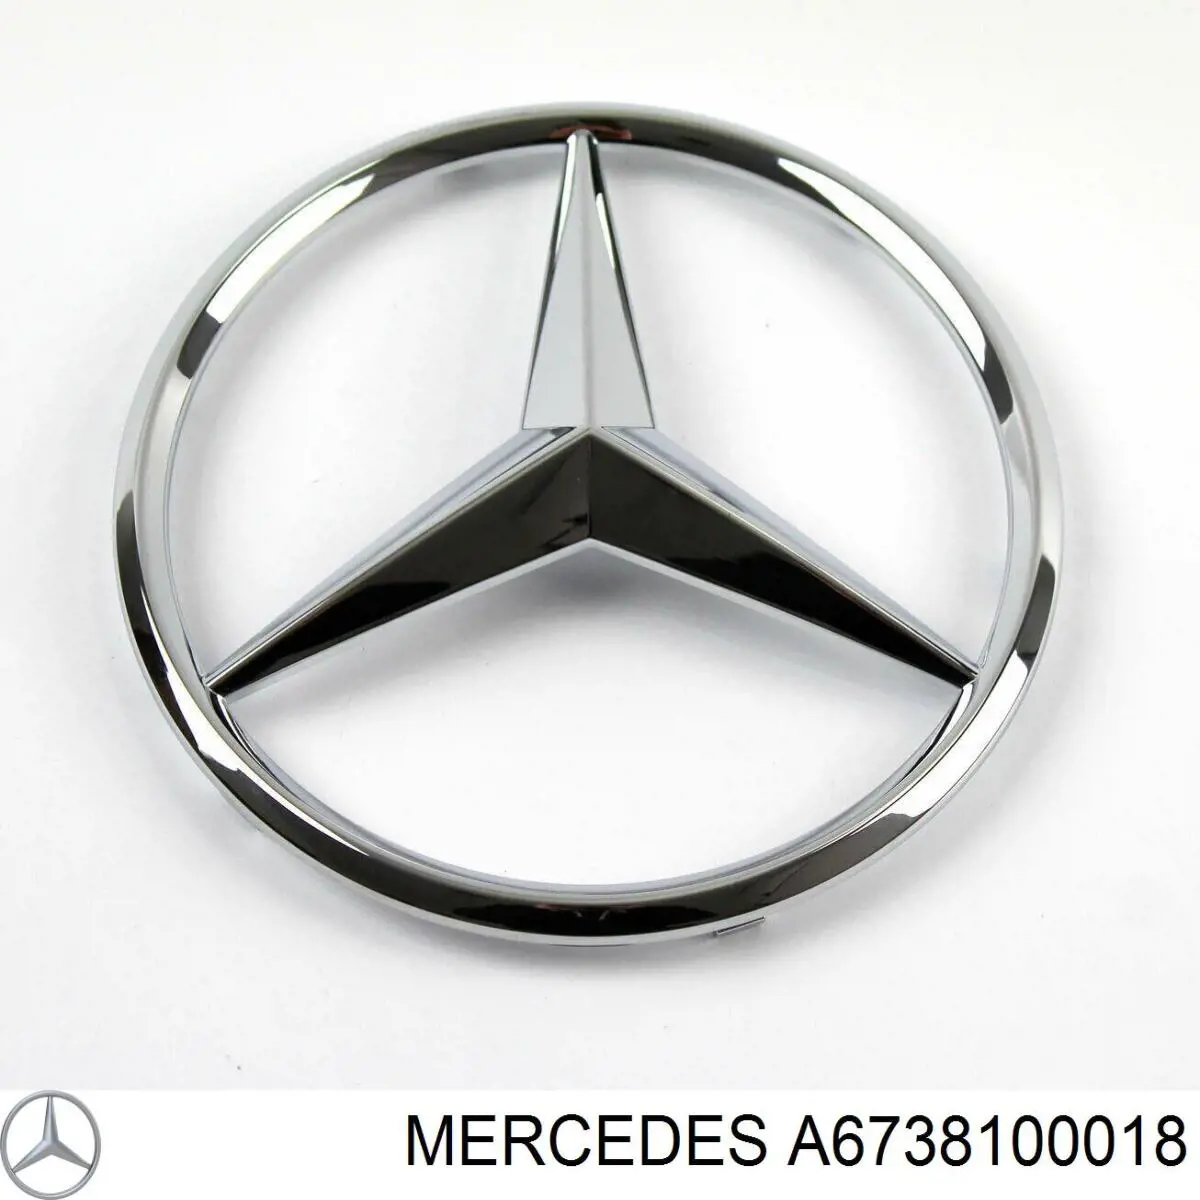 A6738100018 Mercedes emblema de capó